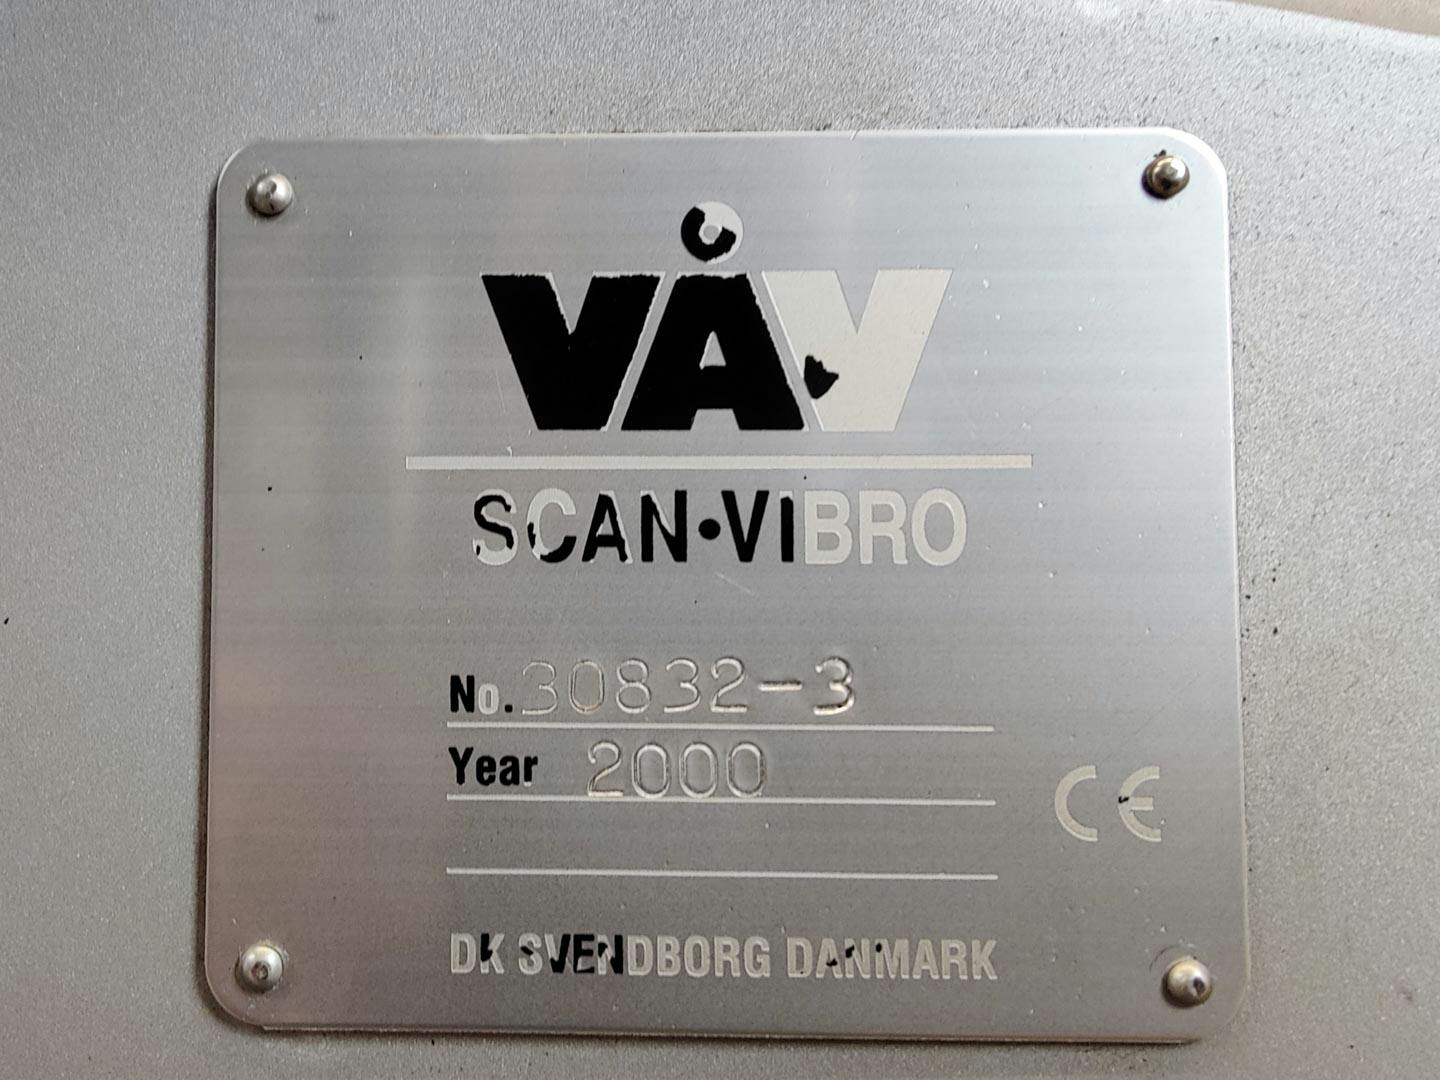 VAV Scan-Vibro - Peneira vibratória - image 14